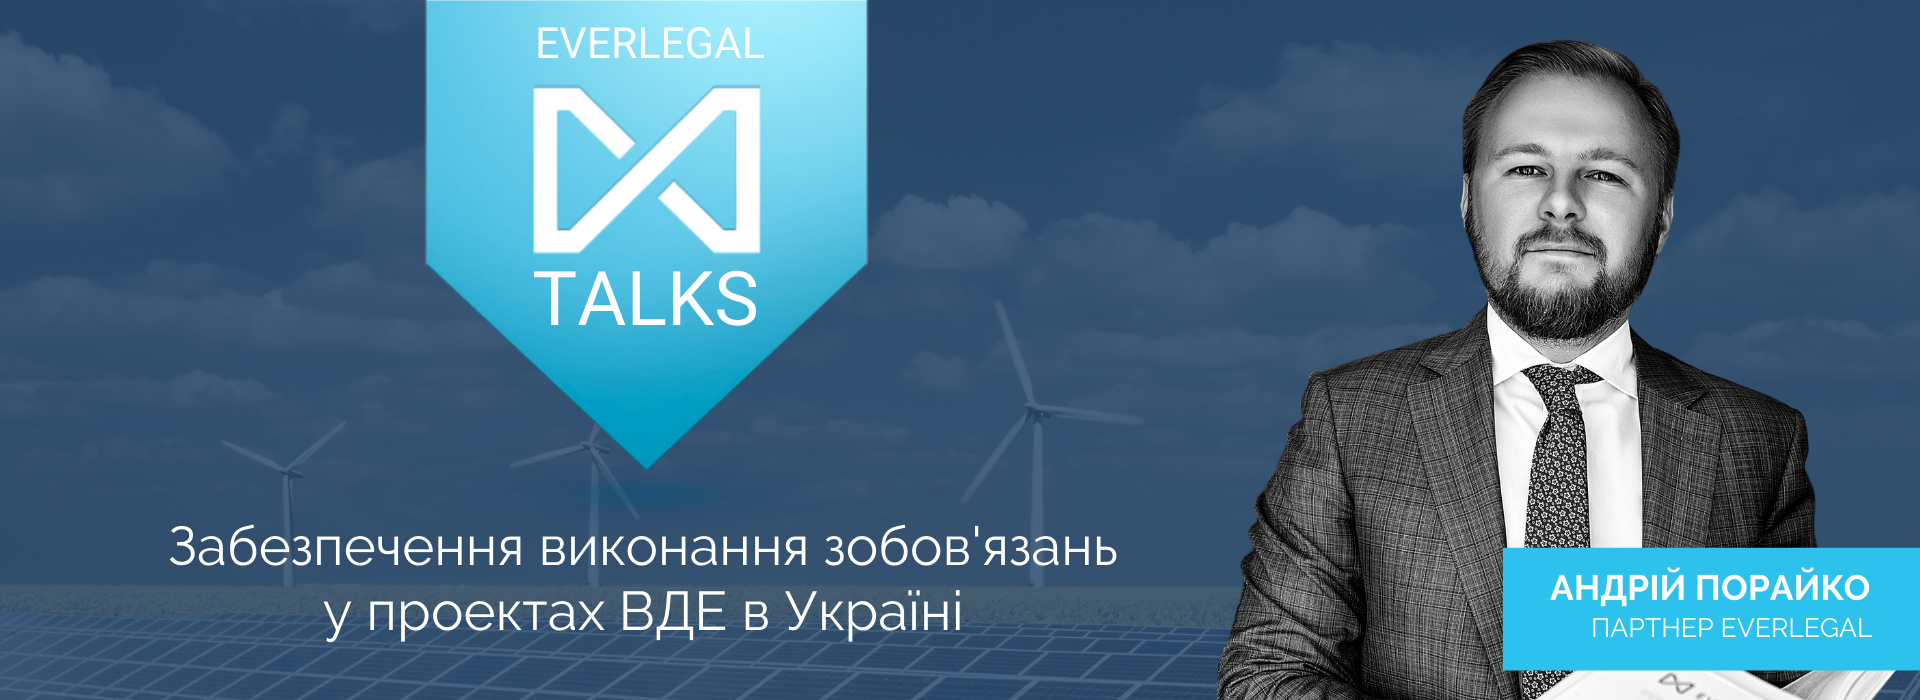 EverlegalTalks: Андрій Порайко про забезпечення виконання зобов’язань у проектах ВДЕ в Україні